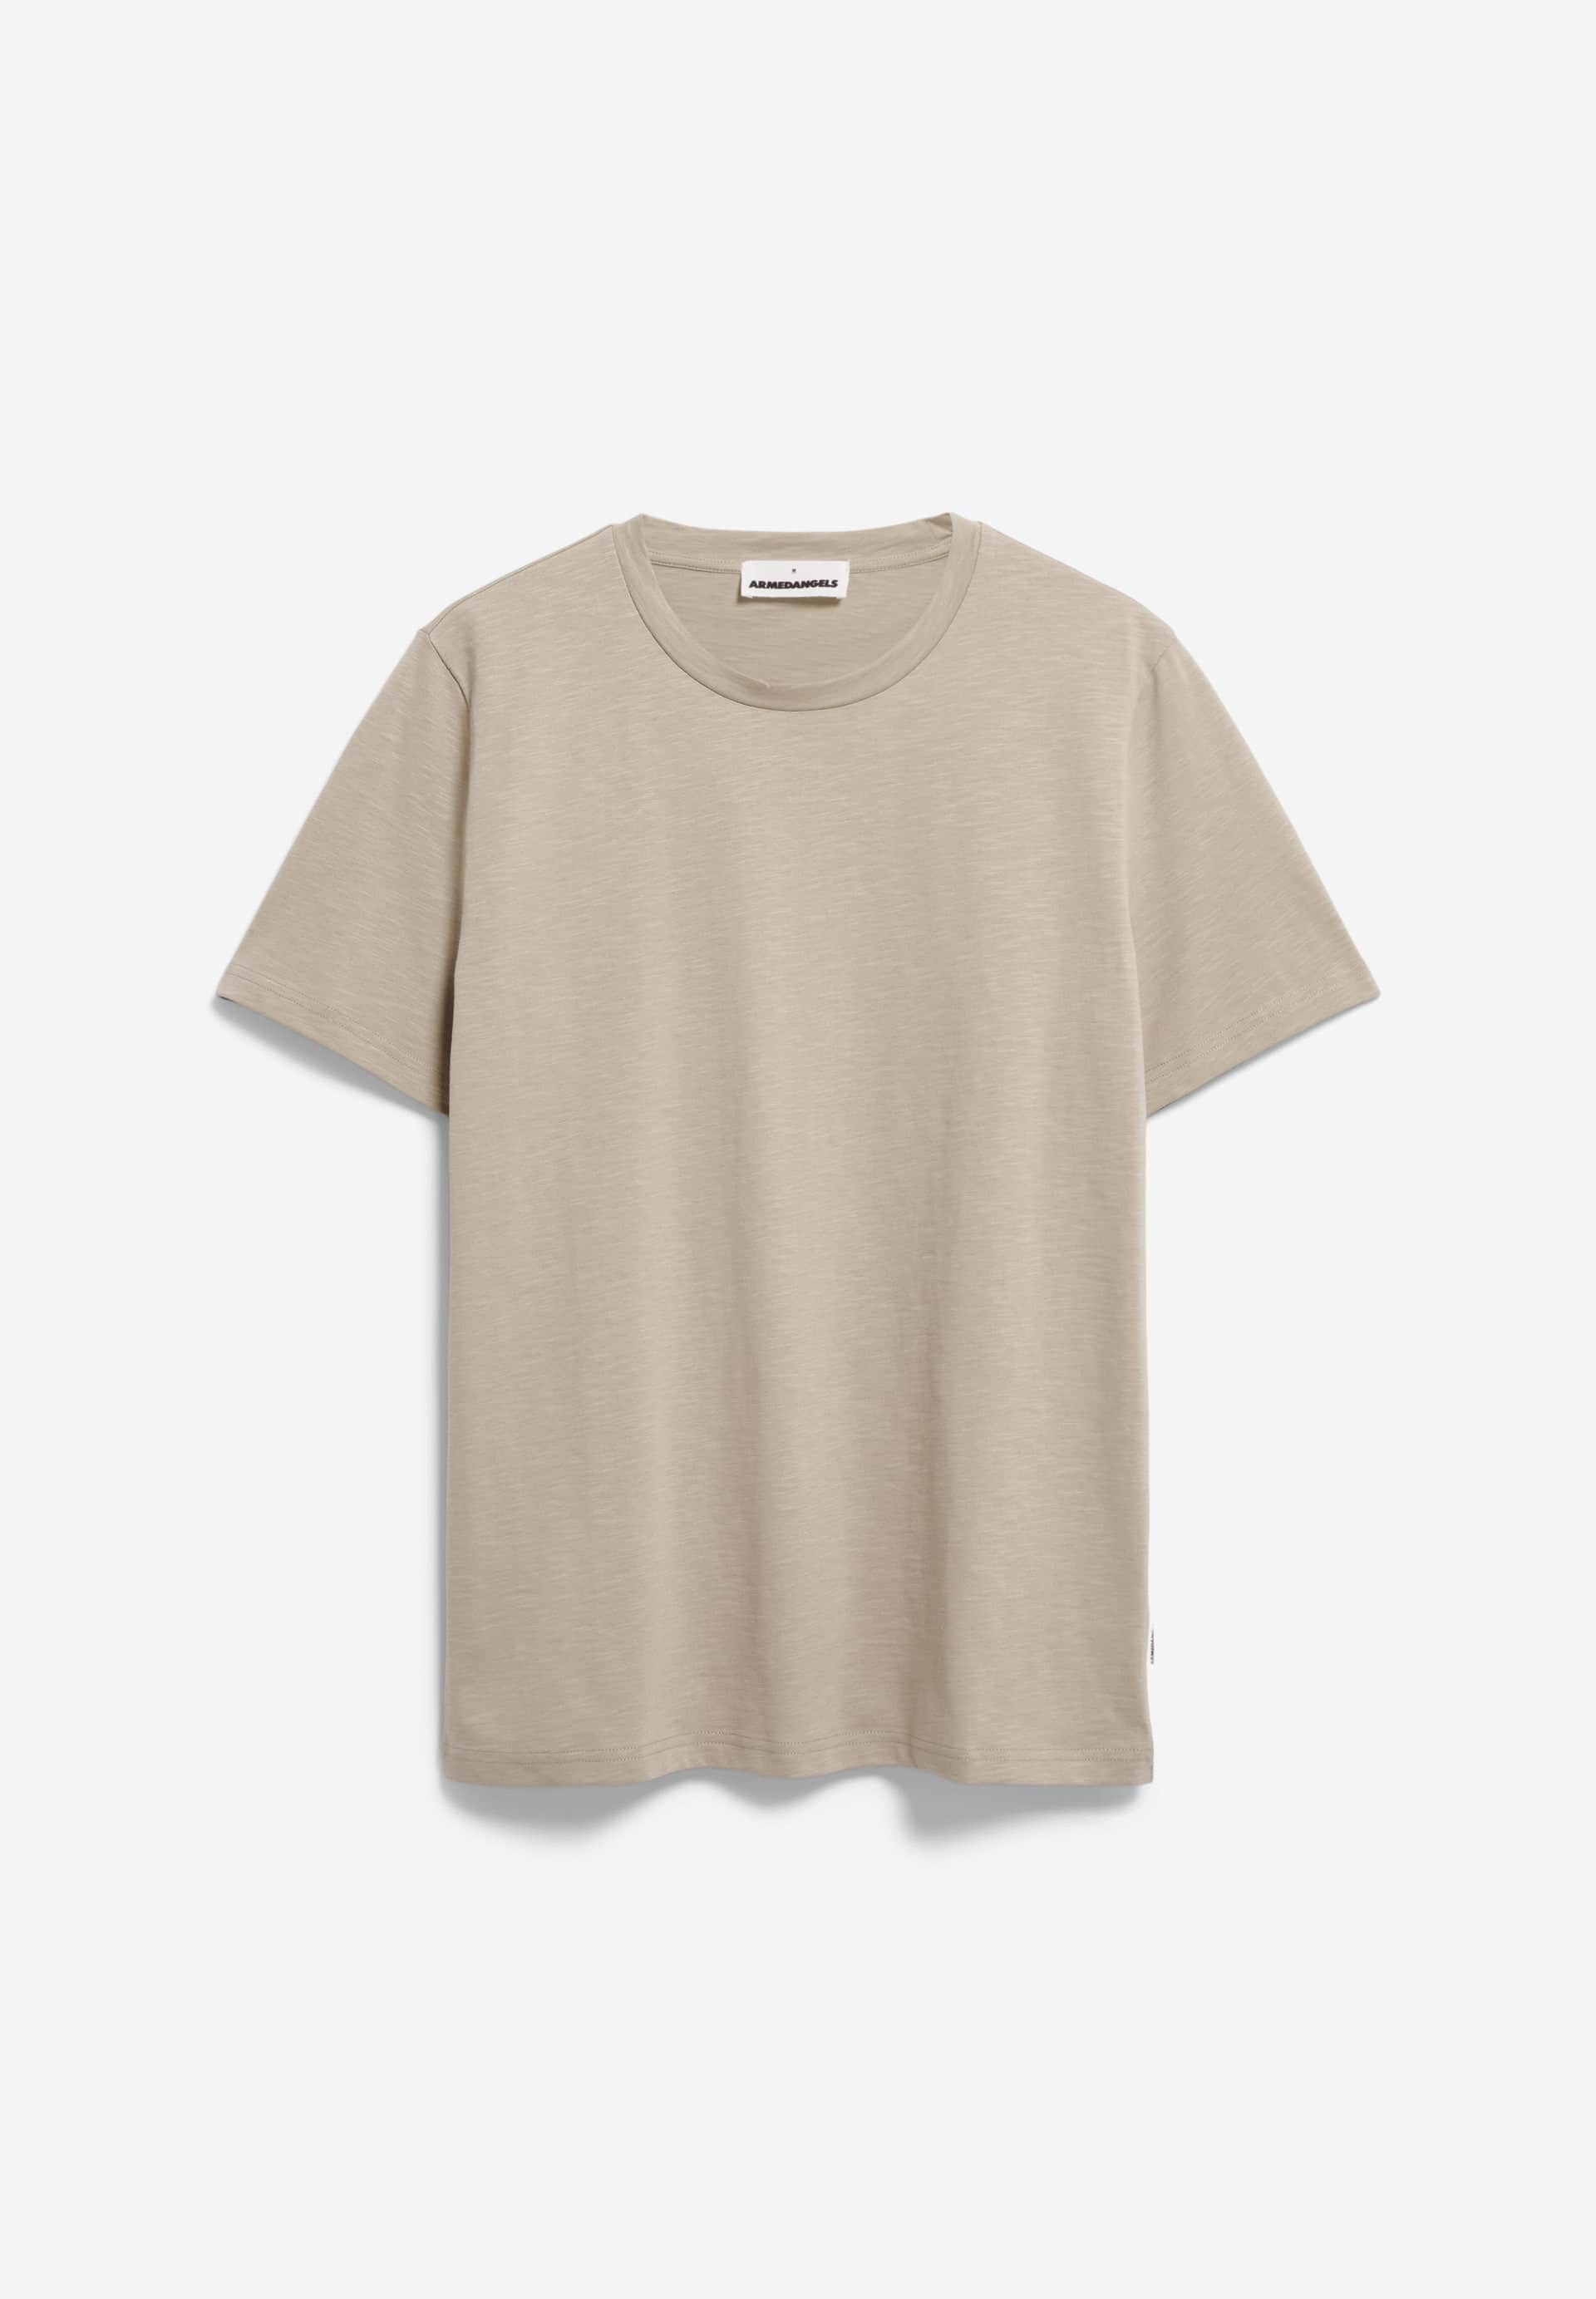 JAAMEL STRUCTURE Heavyweight T-Shirt Regular Fit made of Organic Cotton